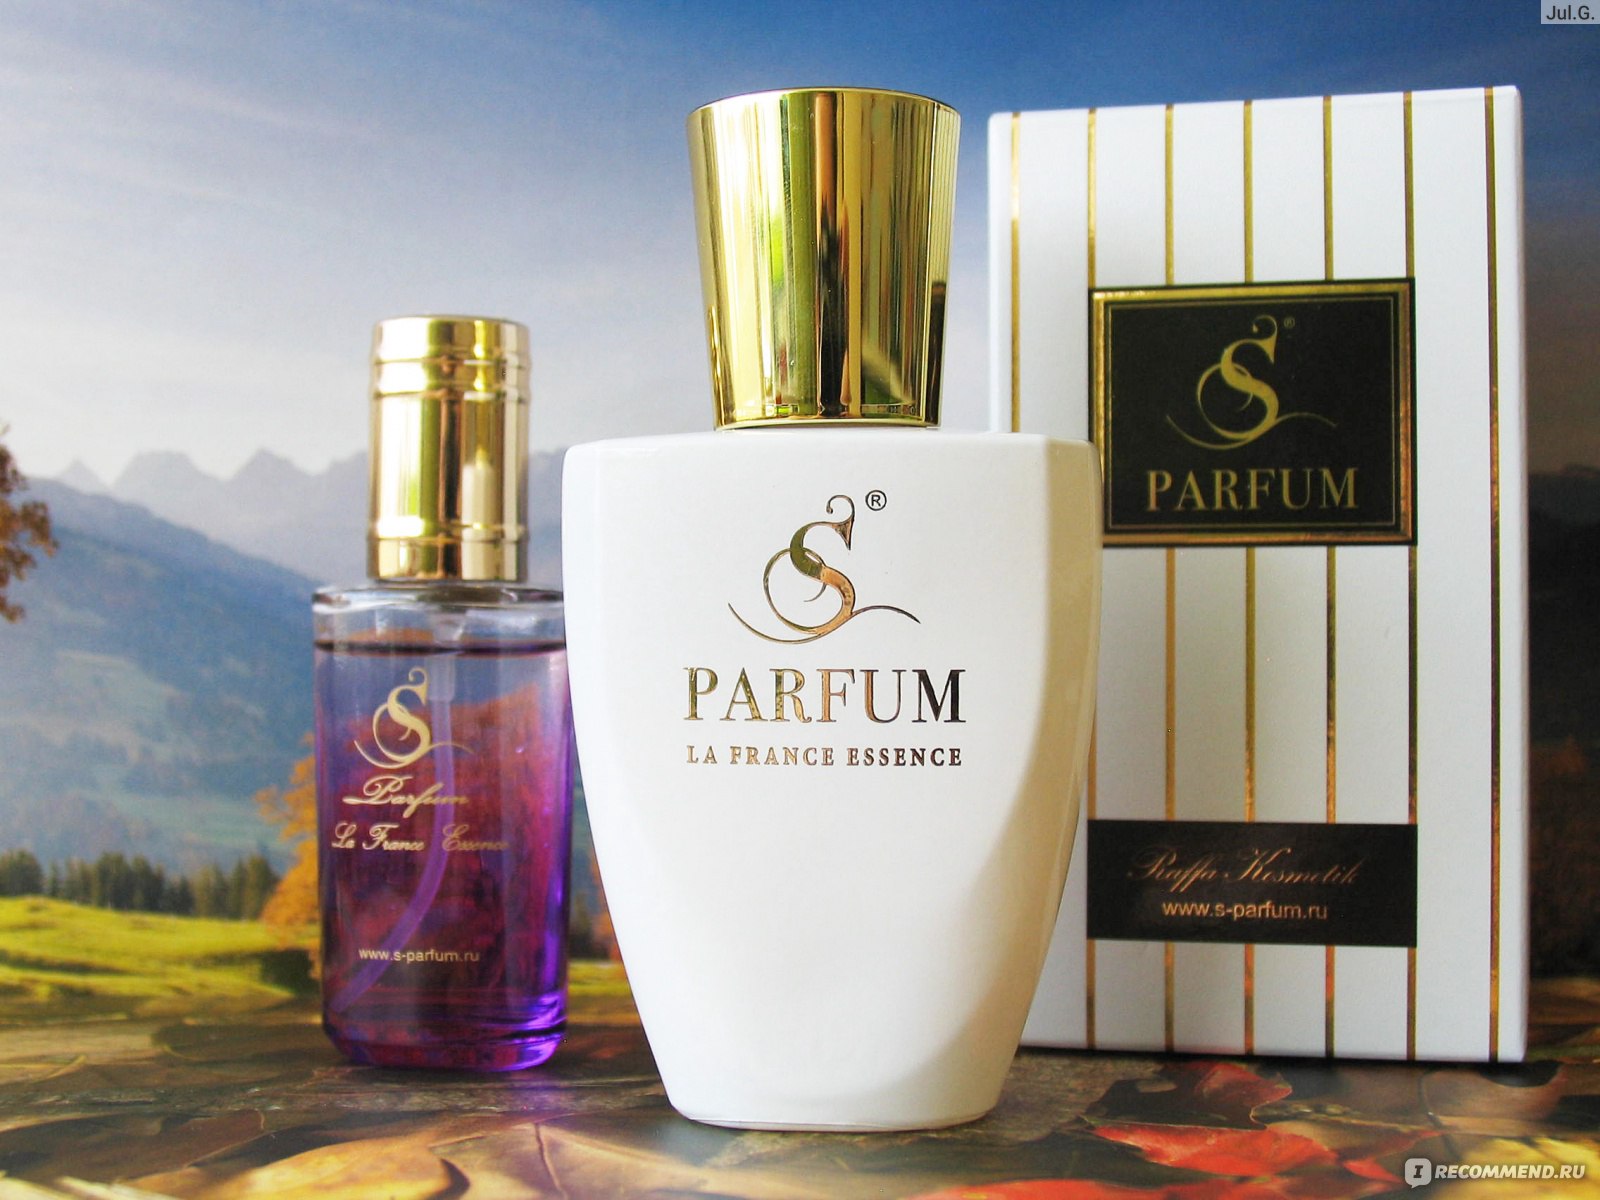 S Parfum аромат s1